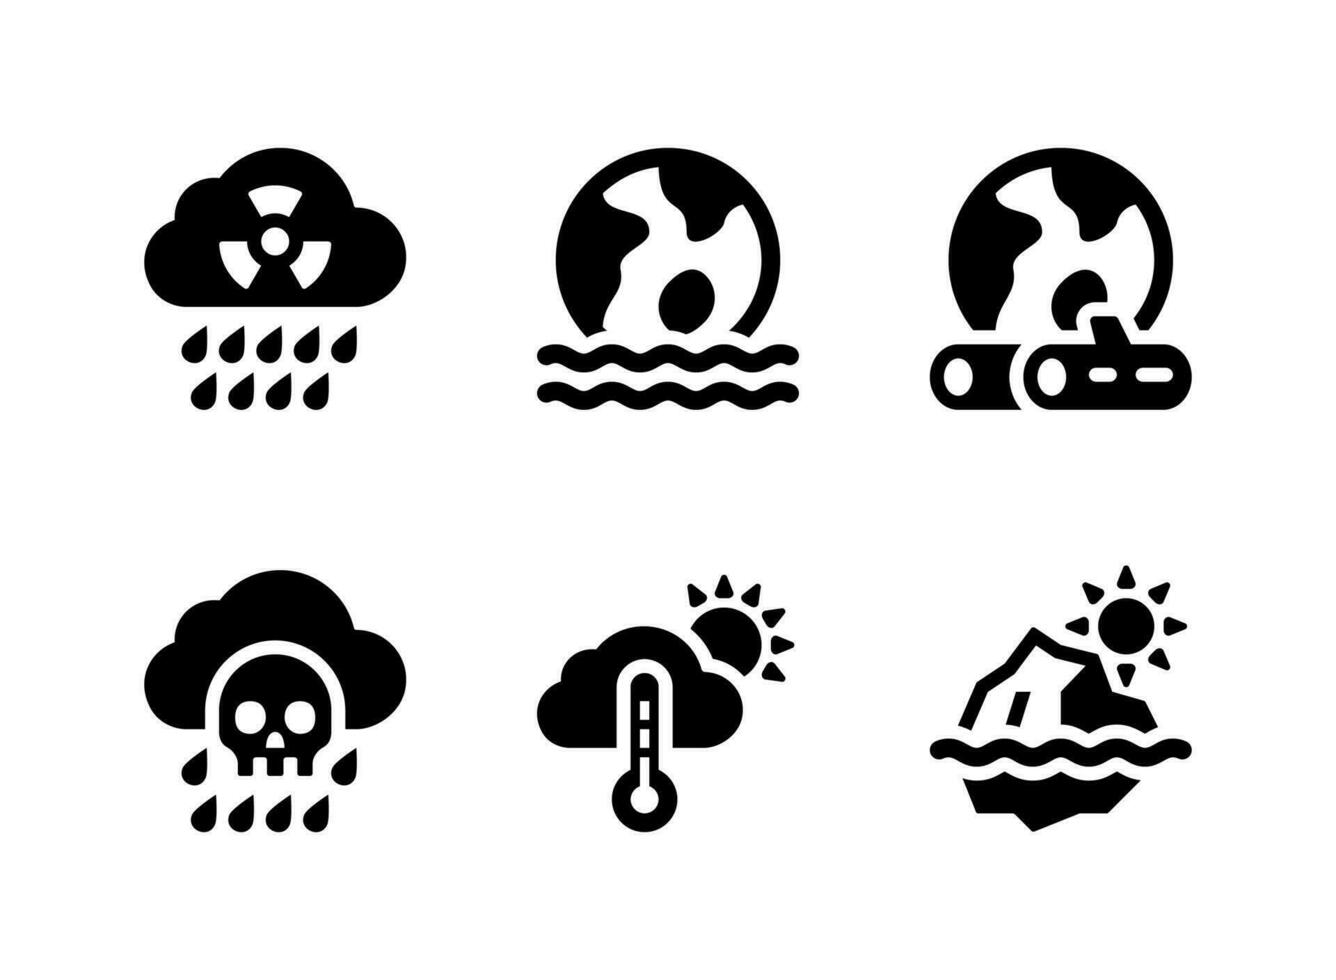 conjunto simples de ícones sólidos vetoriais relacionados às mudanças climáticas. contém ícones como chuva ácida, desastre de inundação, desmatamento e muito mais. vetor